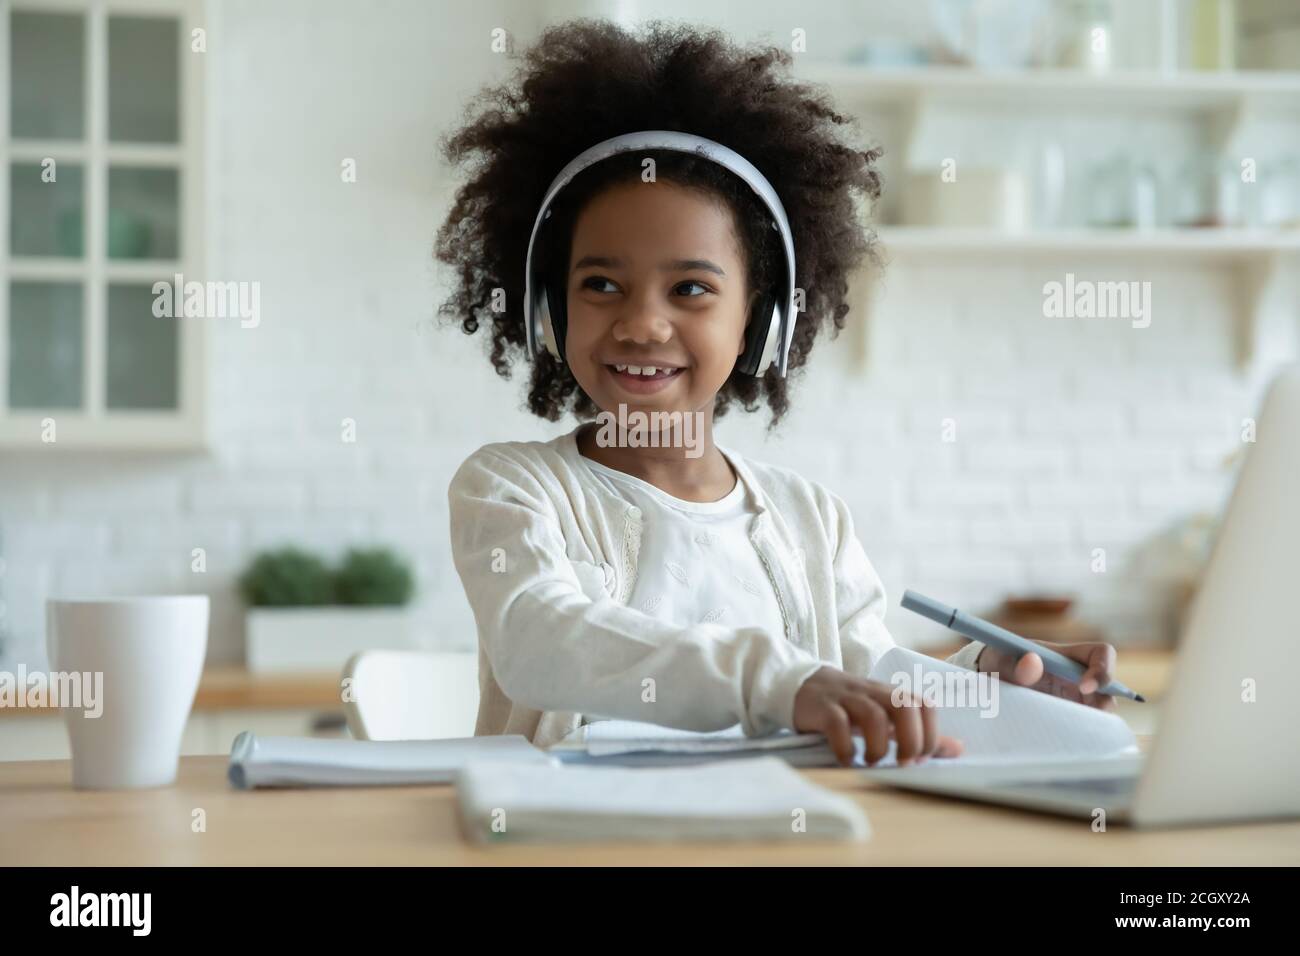 Abgelenkt von E-Learning glücklich gemischt Rennen Kind wegschauen. Stockfoto